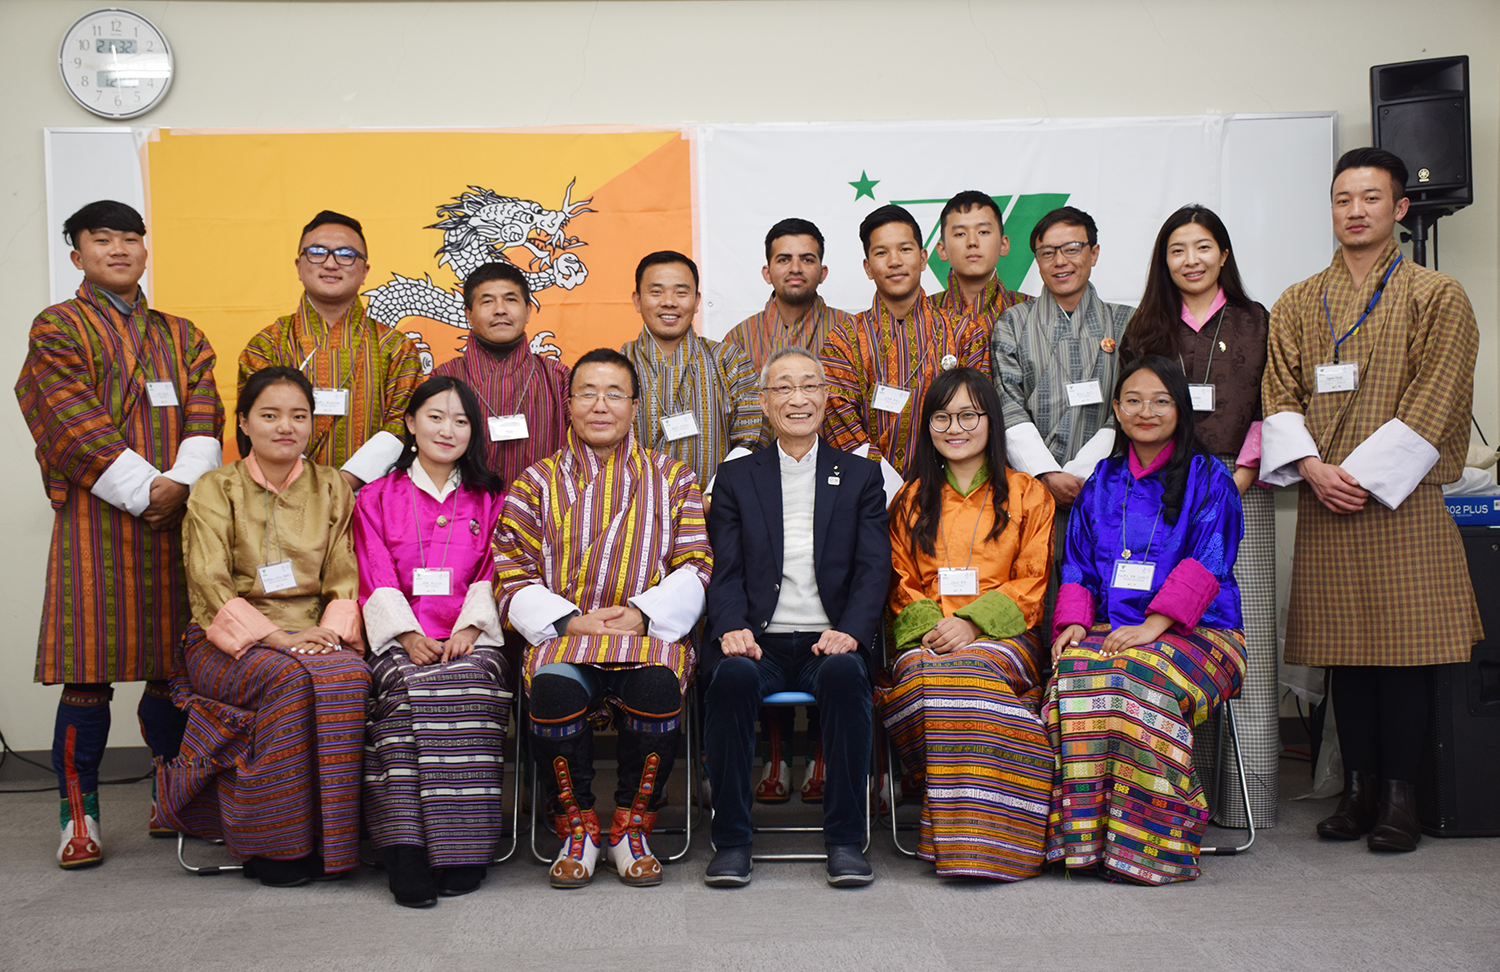 ブータン王国よりロイヤルティンプーカレッジ（RTC）
の短期留学プログラムにて13名が来日